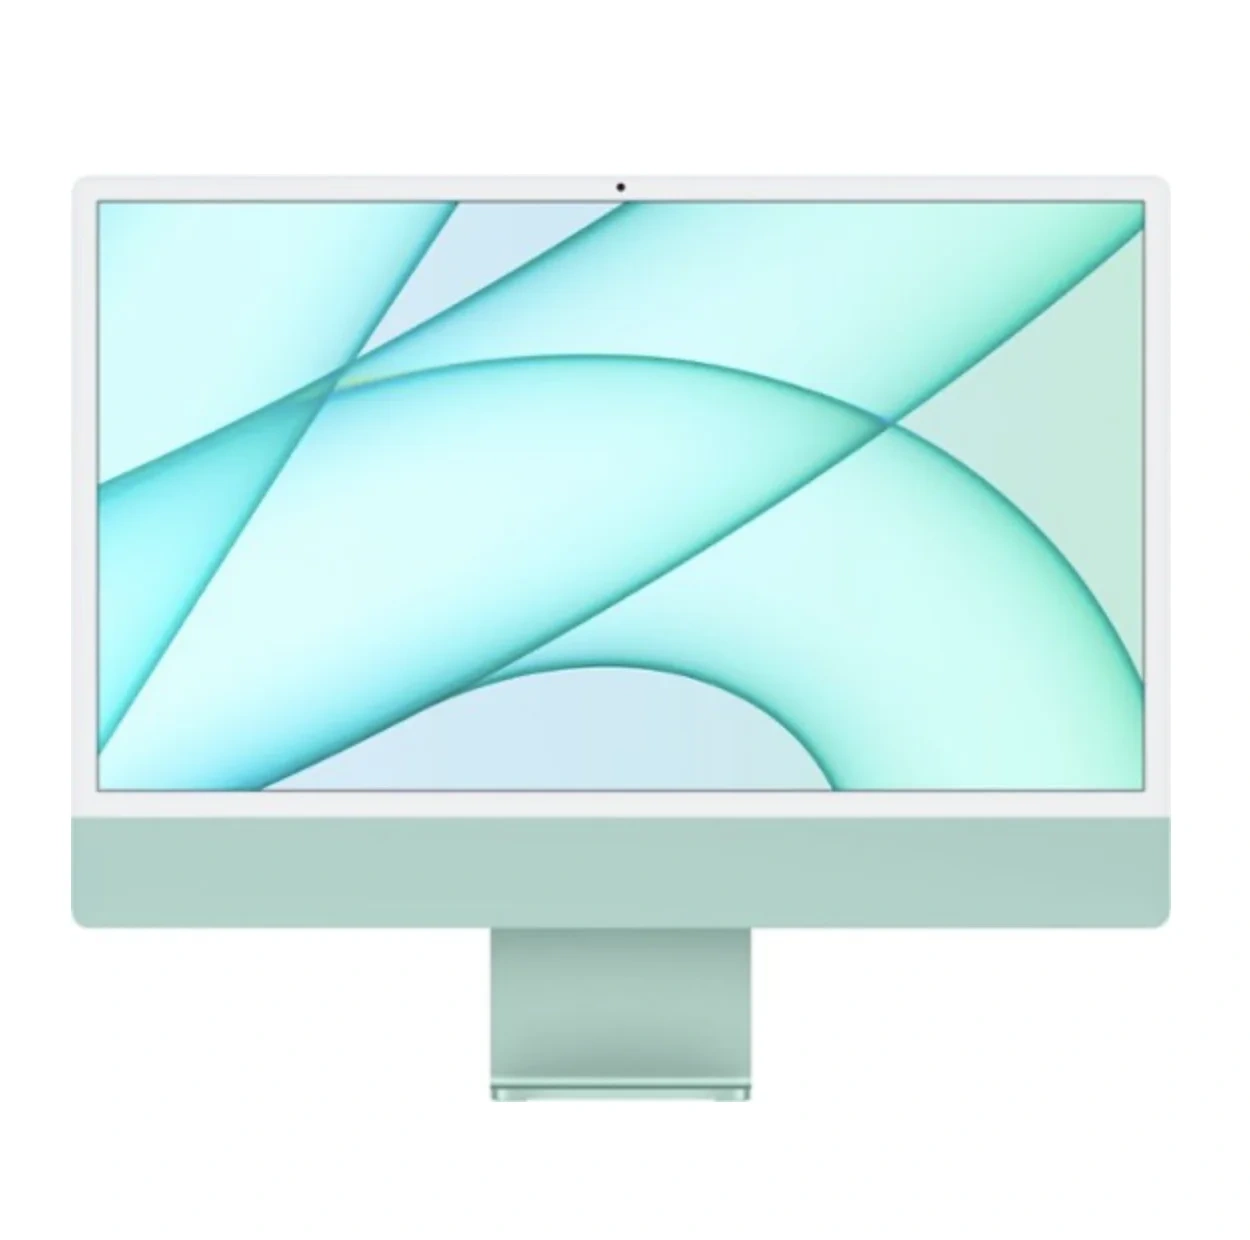 【史低价】Apple iMac 24吋 (M1, 7核GPU, 8GB, 256GB)  多色可选